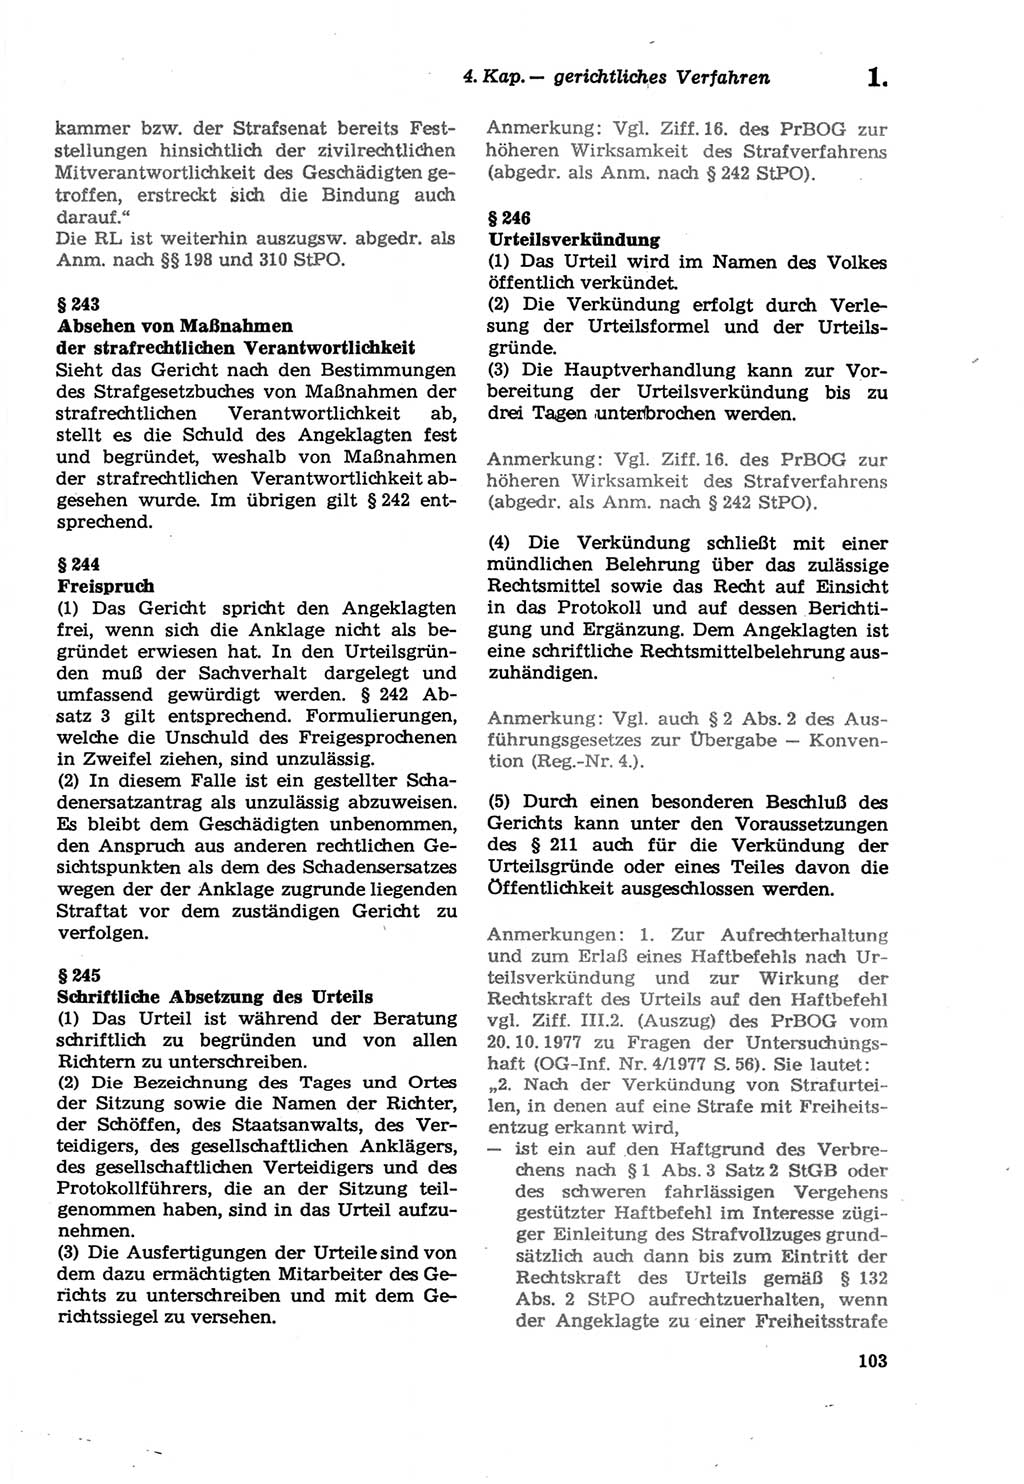 Strafprozeßordnung (StPO) der Deutschen Demokratischen Republik (DDR) sowie angrenzende Gesetze und Bestimmungen 1979, Seite 103 (StPO DDR Ges. Best. 1979, S. 103)